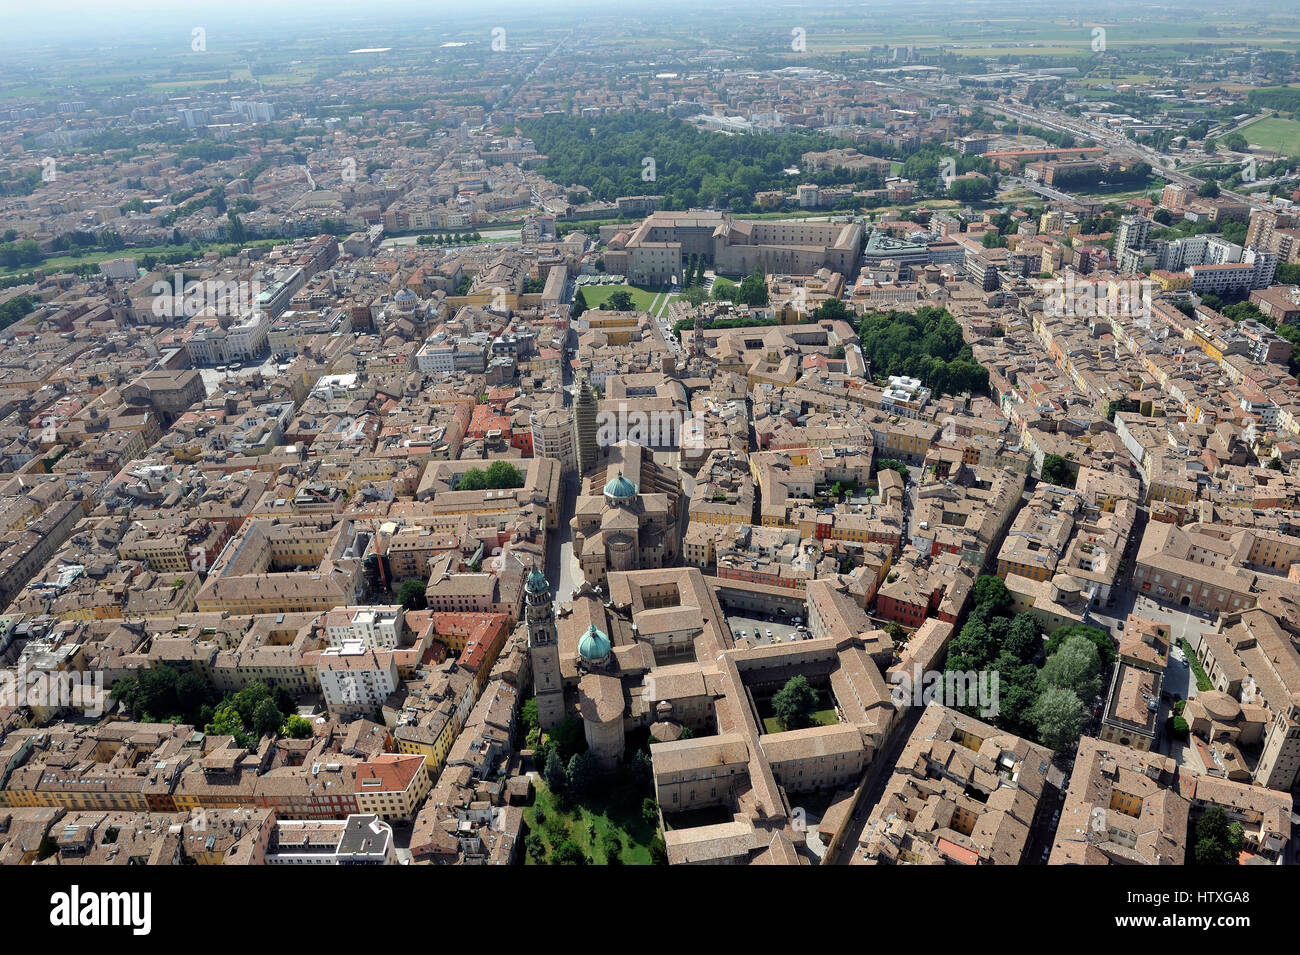 Vista aerea di Parma con Piazza del Duomo, la cattedrale e il Battistero; Pilotta, Taro, Tardini - Regione Emilia Romagna, Italia Foto Stock